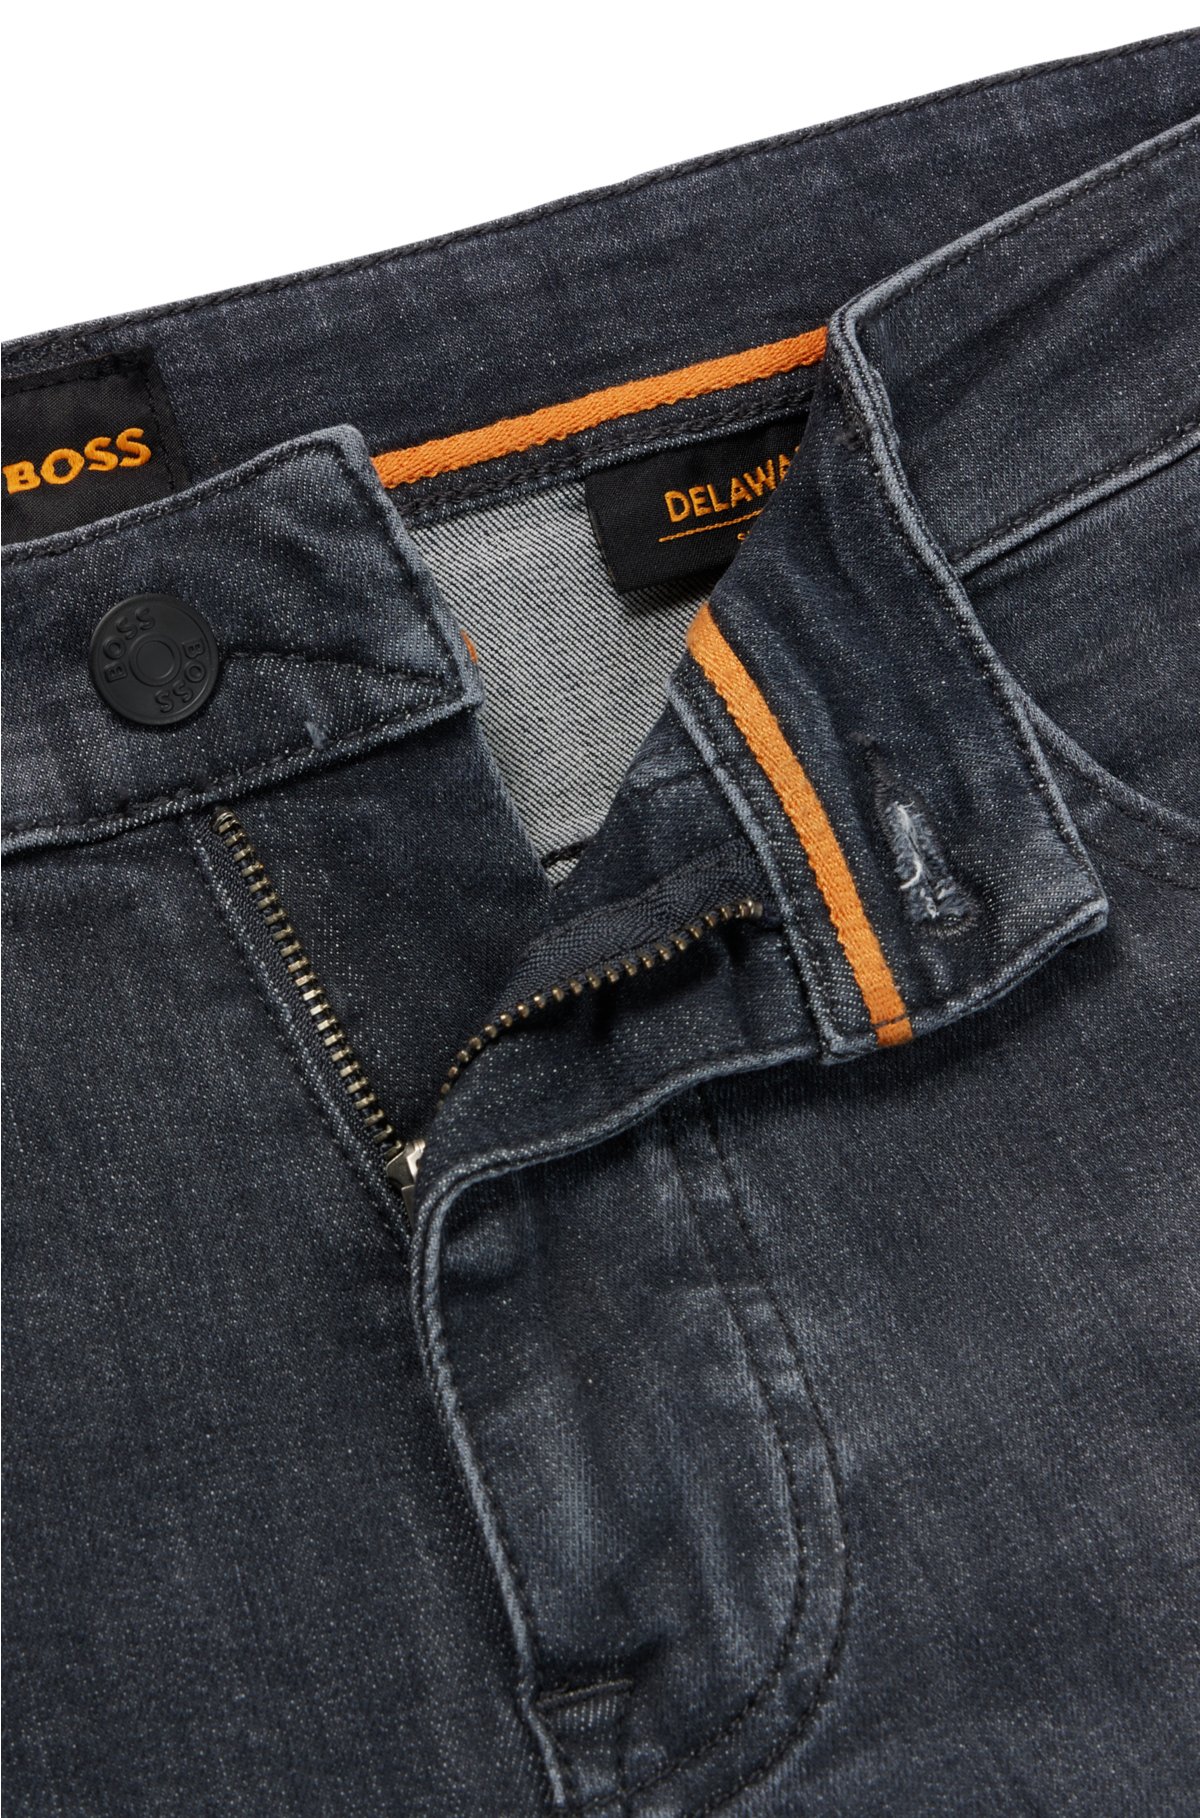 tilgivet rangle ekstremister BOSS - Slim-fit jeans in gray supreme-movement denim